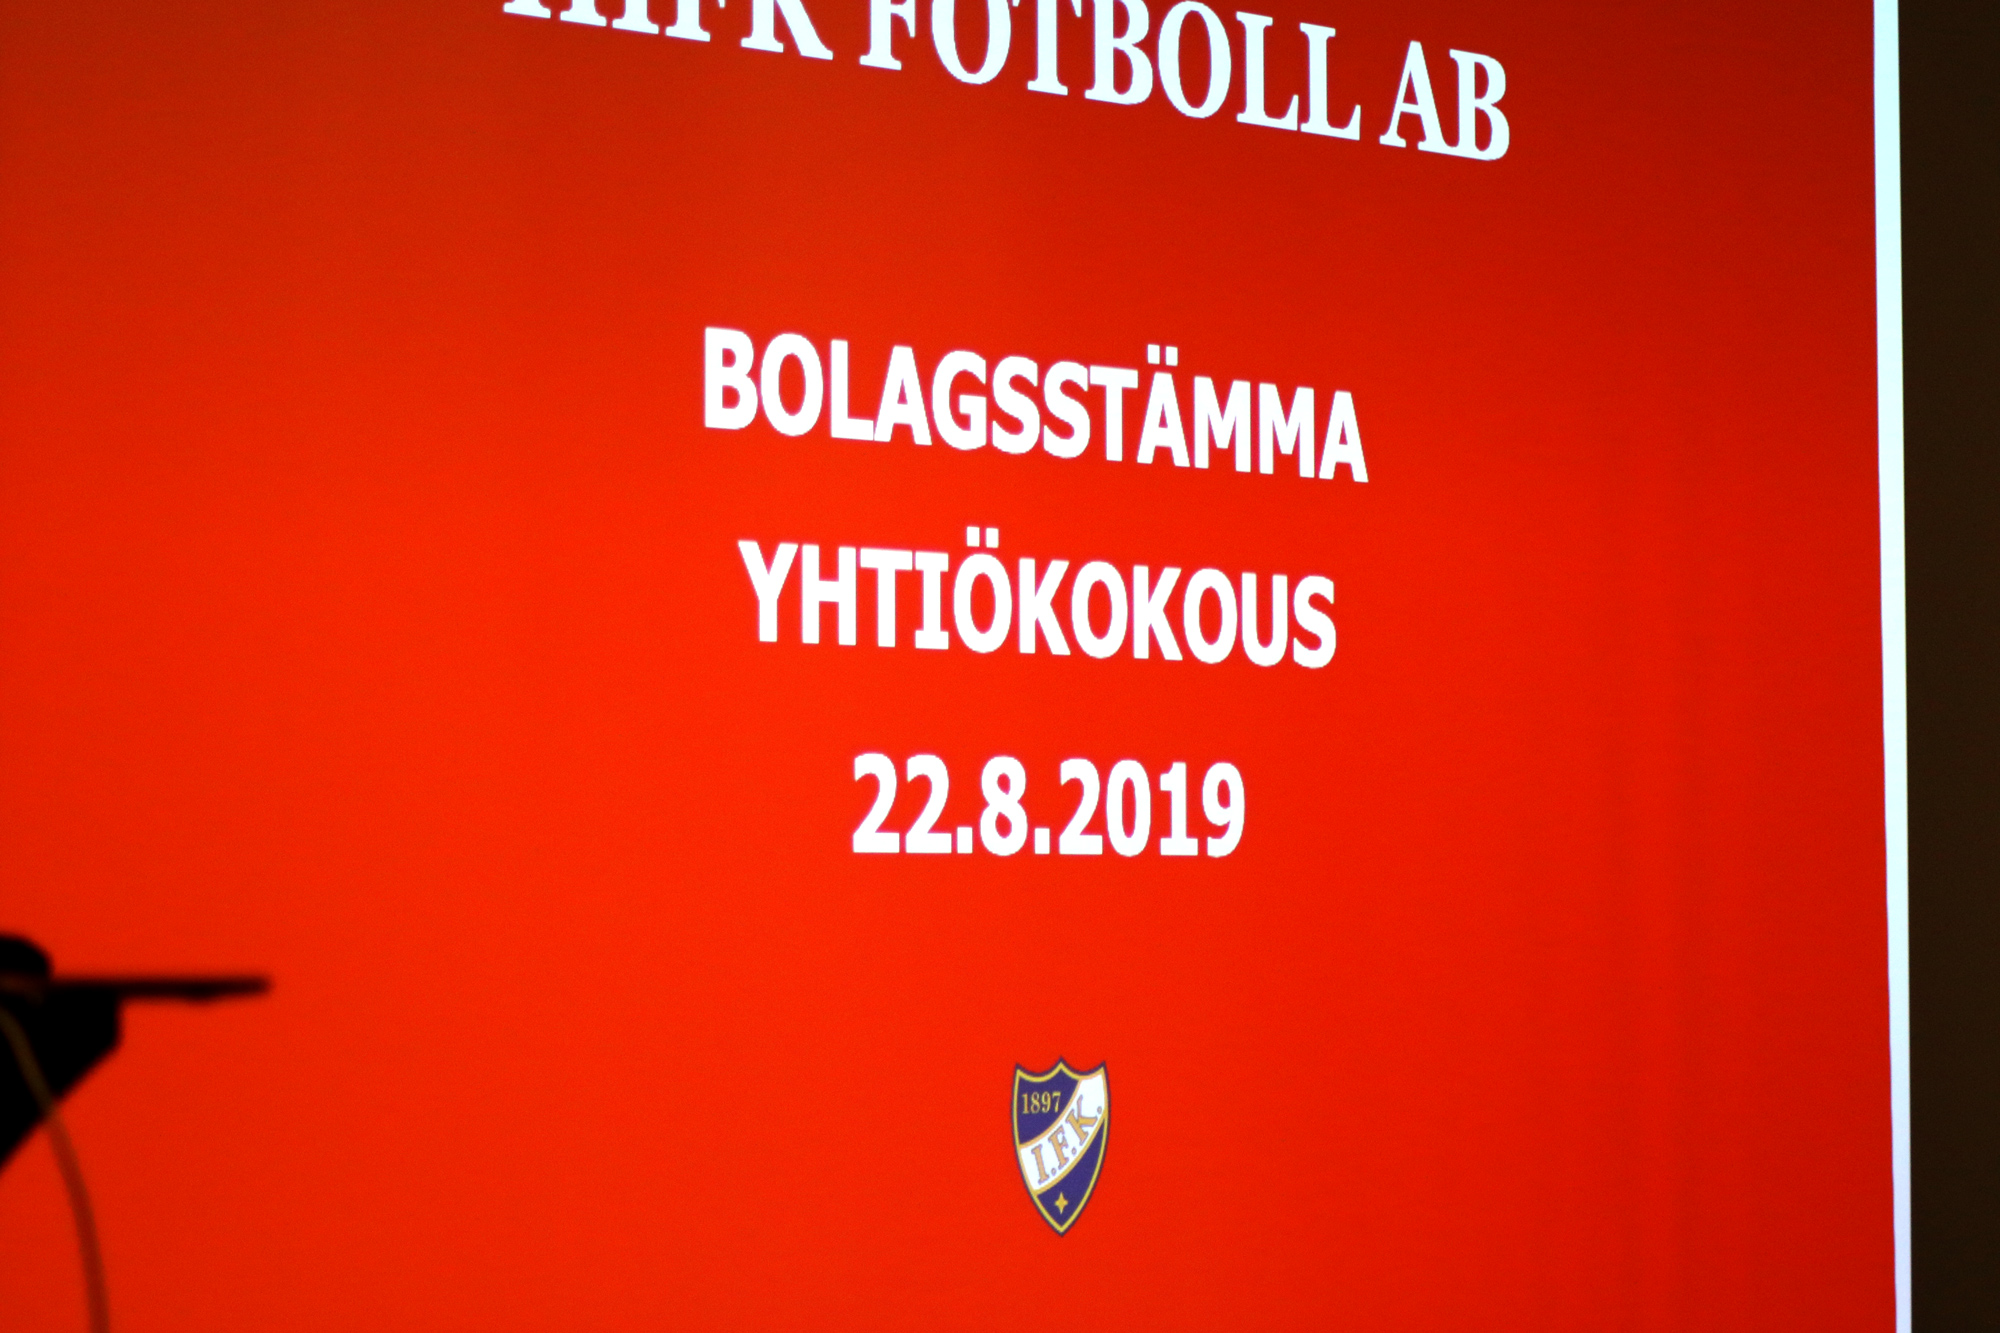 HIFK Fotboll Ab höll bolagsstämma 22.8.2019